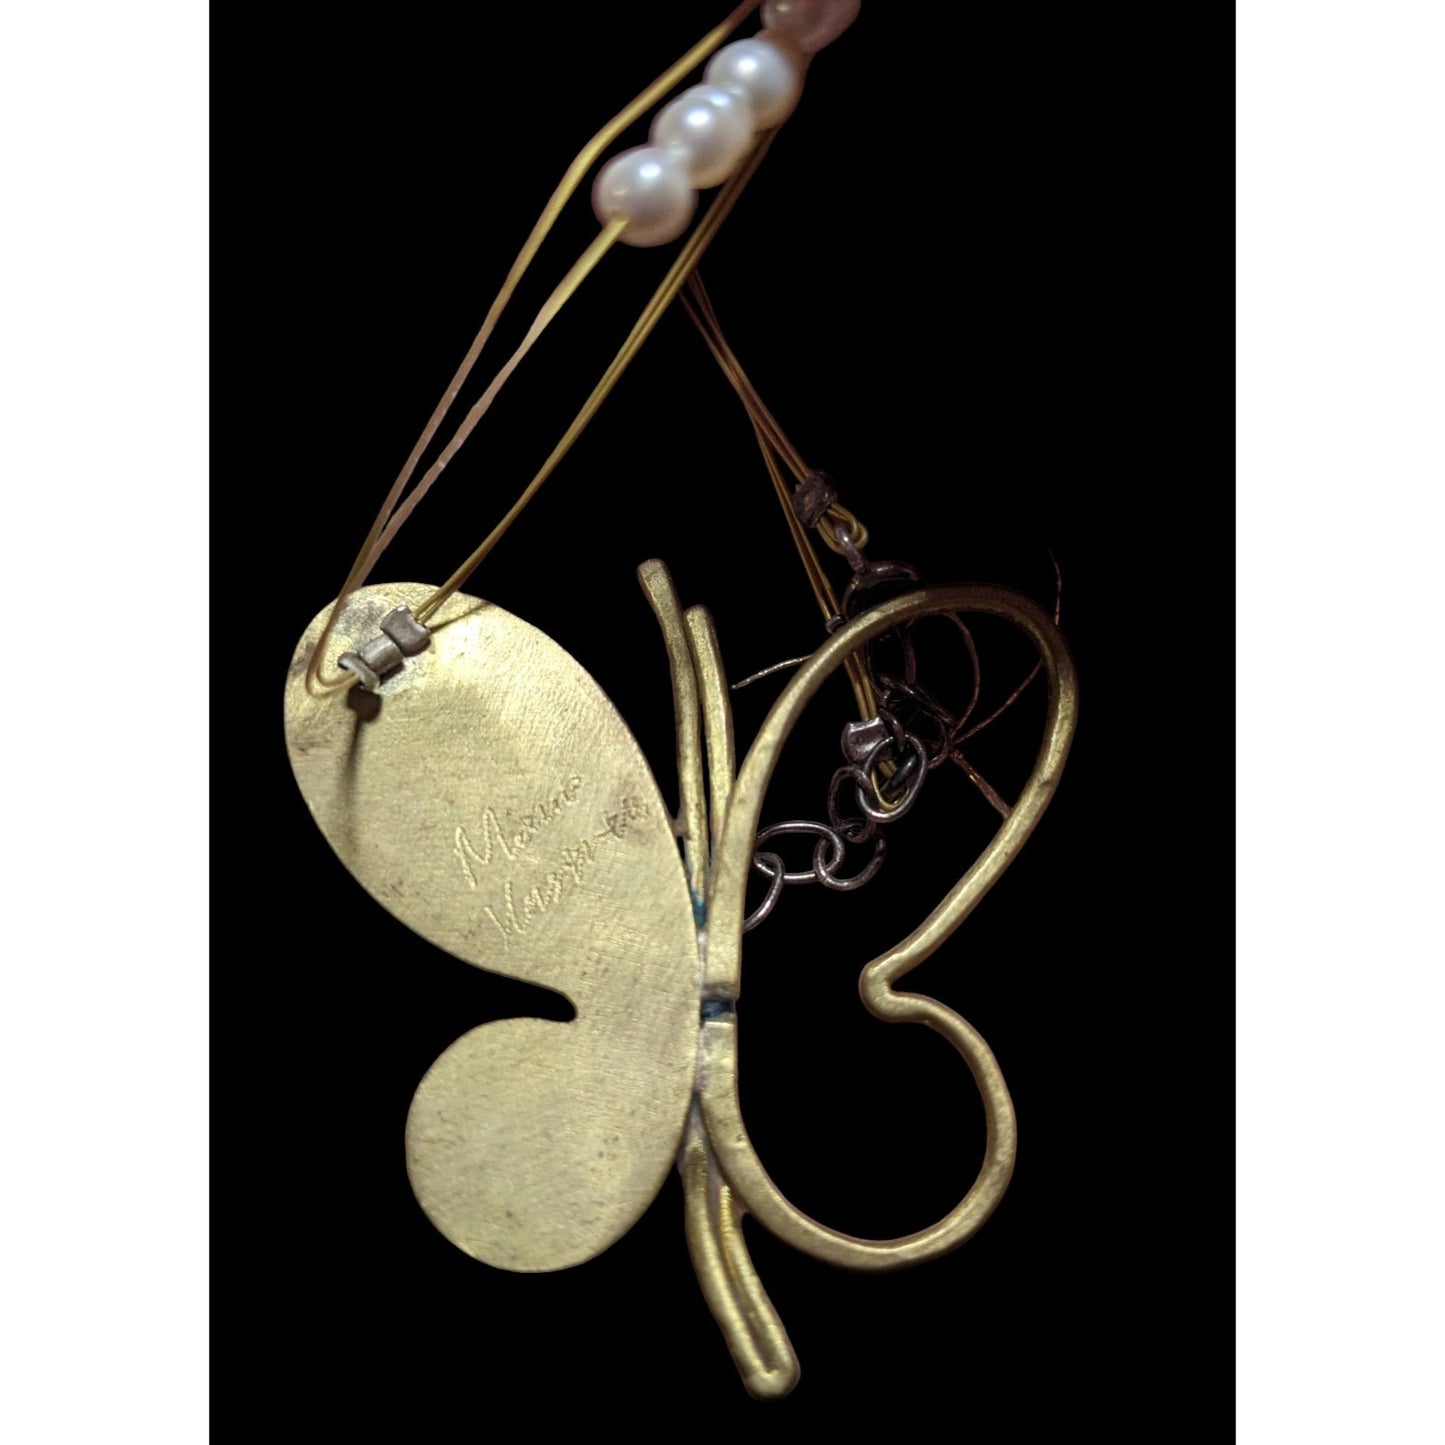 Modernist Butterfly Necklace